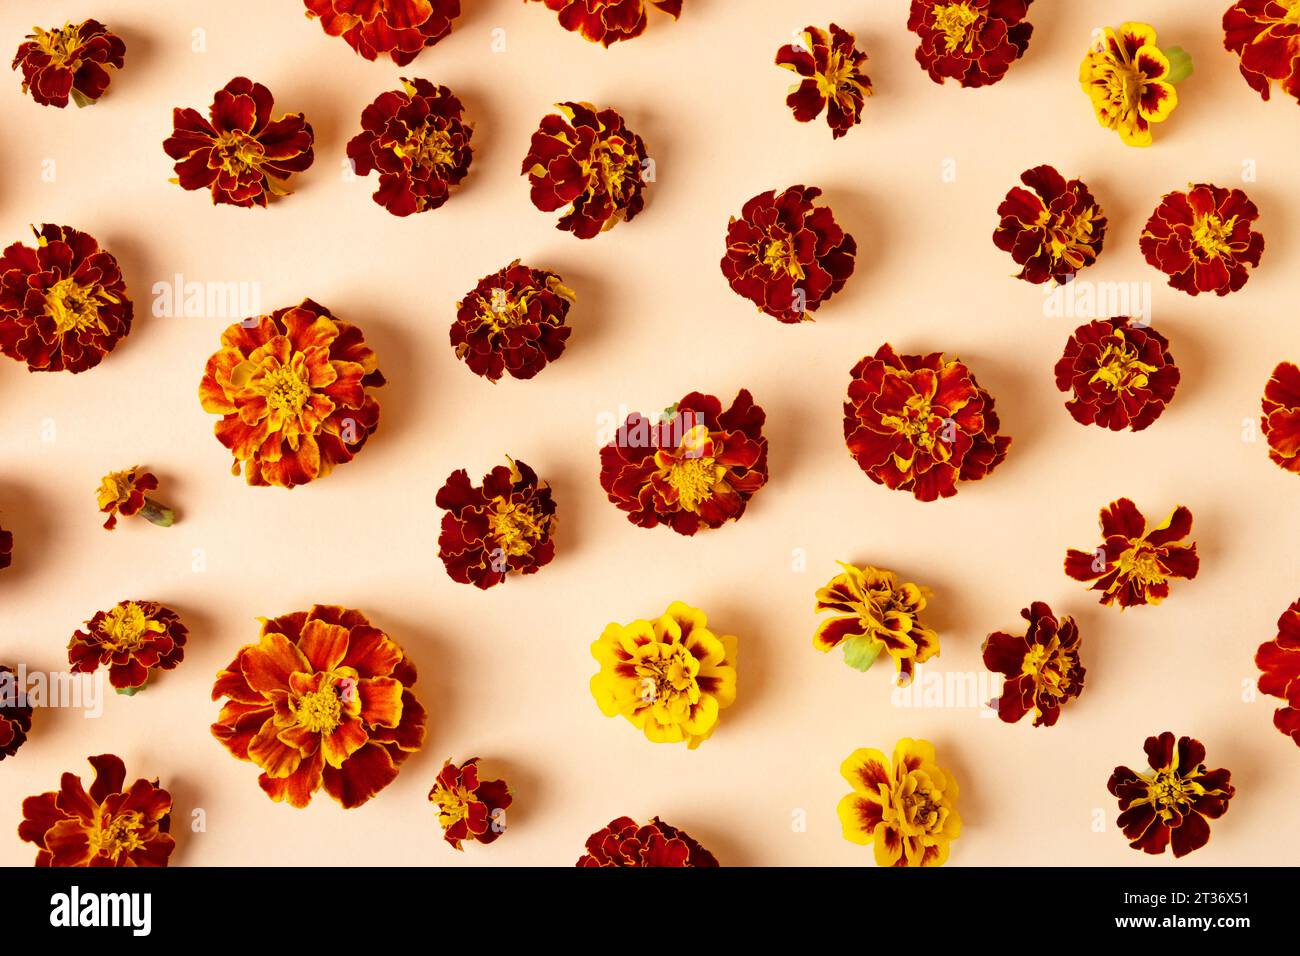 Joyeux concept d'automne. Fleurs Marigold sur un fond orange. Composition d'automne, carte postale, mise à plat, vue de dessus Banque D'Images